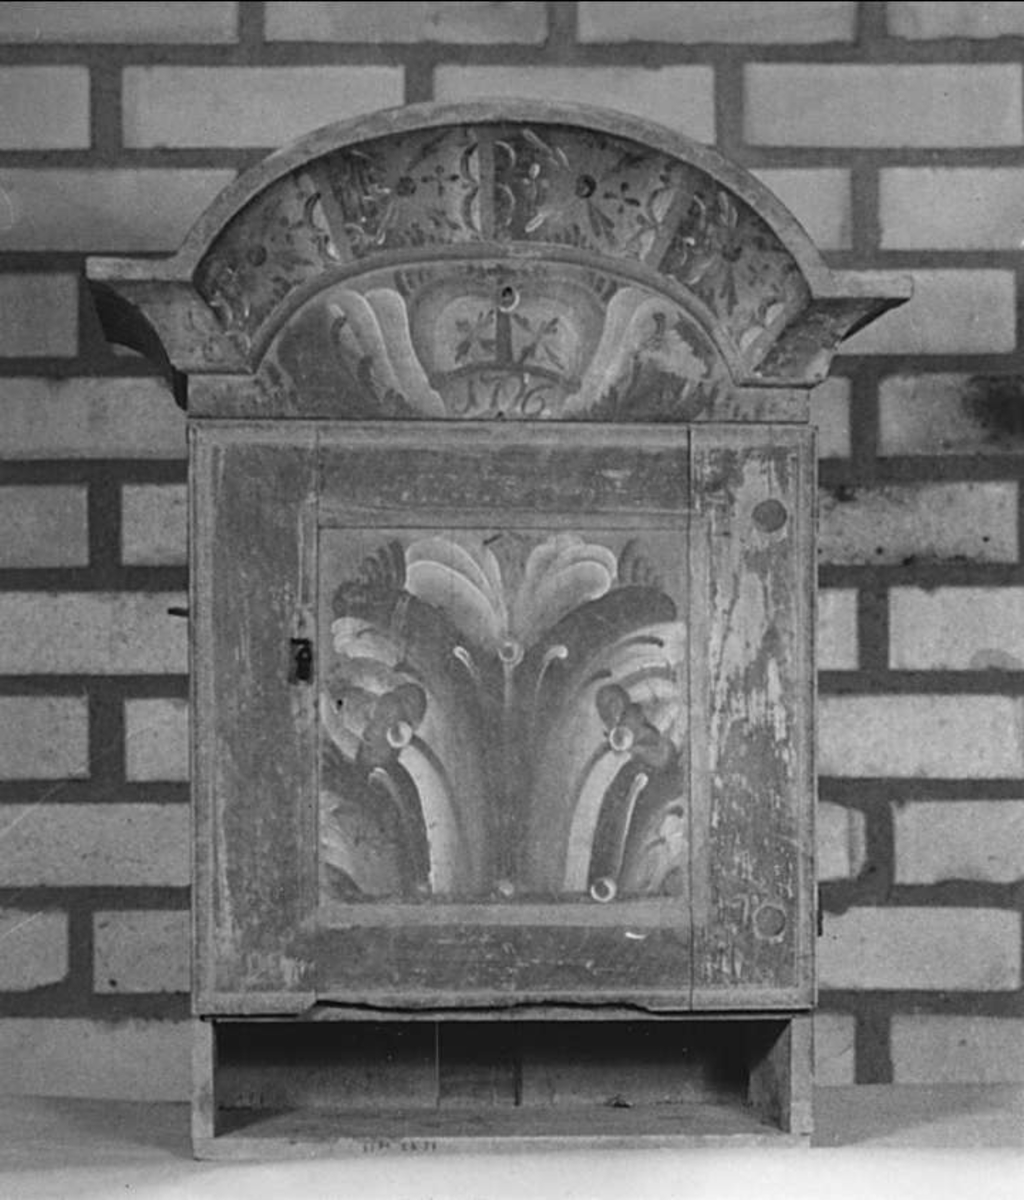 Hängskåp av trä. Brunmarmorerat med dekor i vitt, rött, svart och blått. Över dörren i kronan står: 1796. Inredning: en hylla och en skedhylla över den.